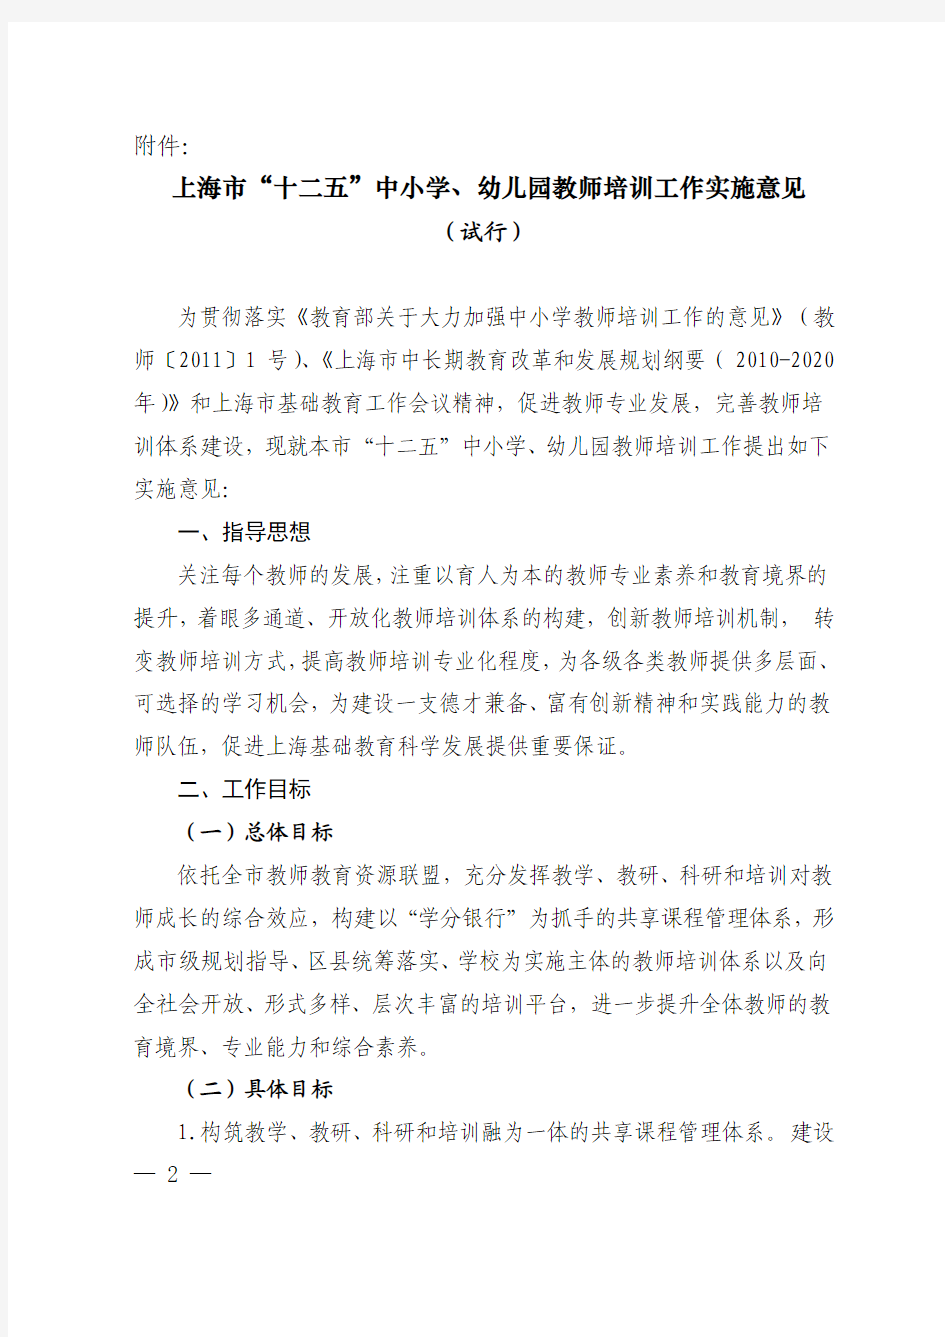 上海市教育委员会关于印发《上海市“十二五”中小学、幼儿园教师培训工作实施意见(试行)》的通知